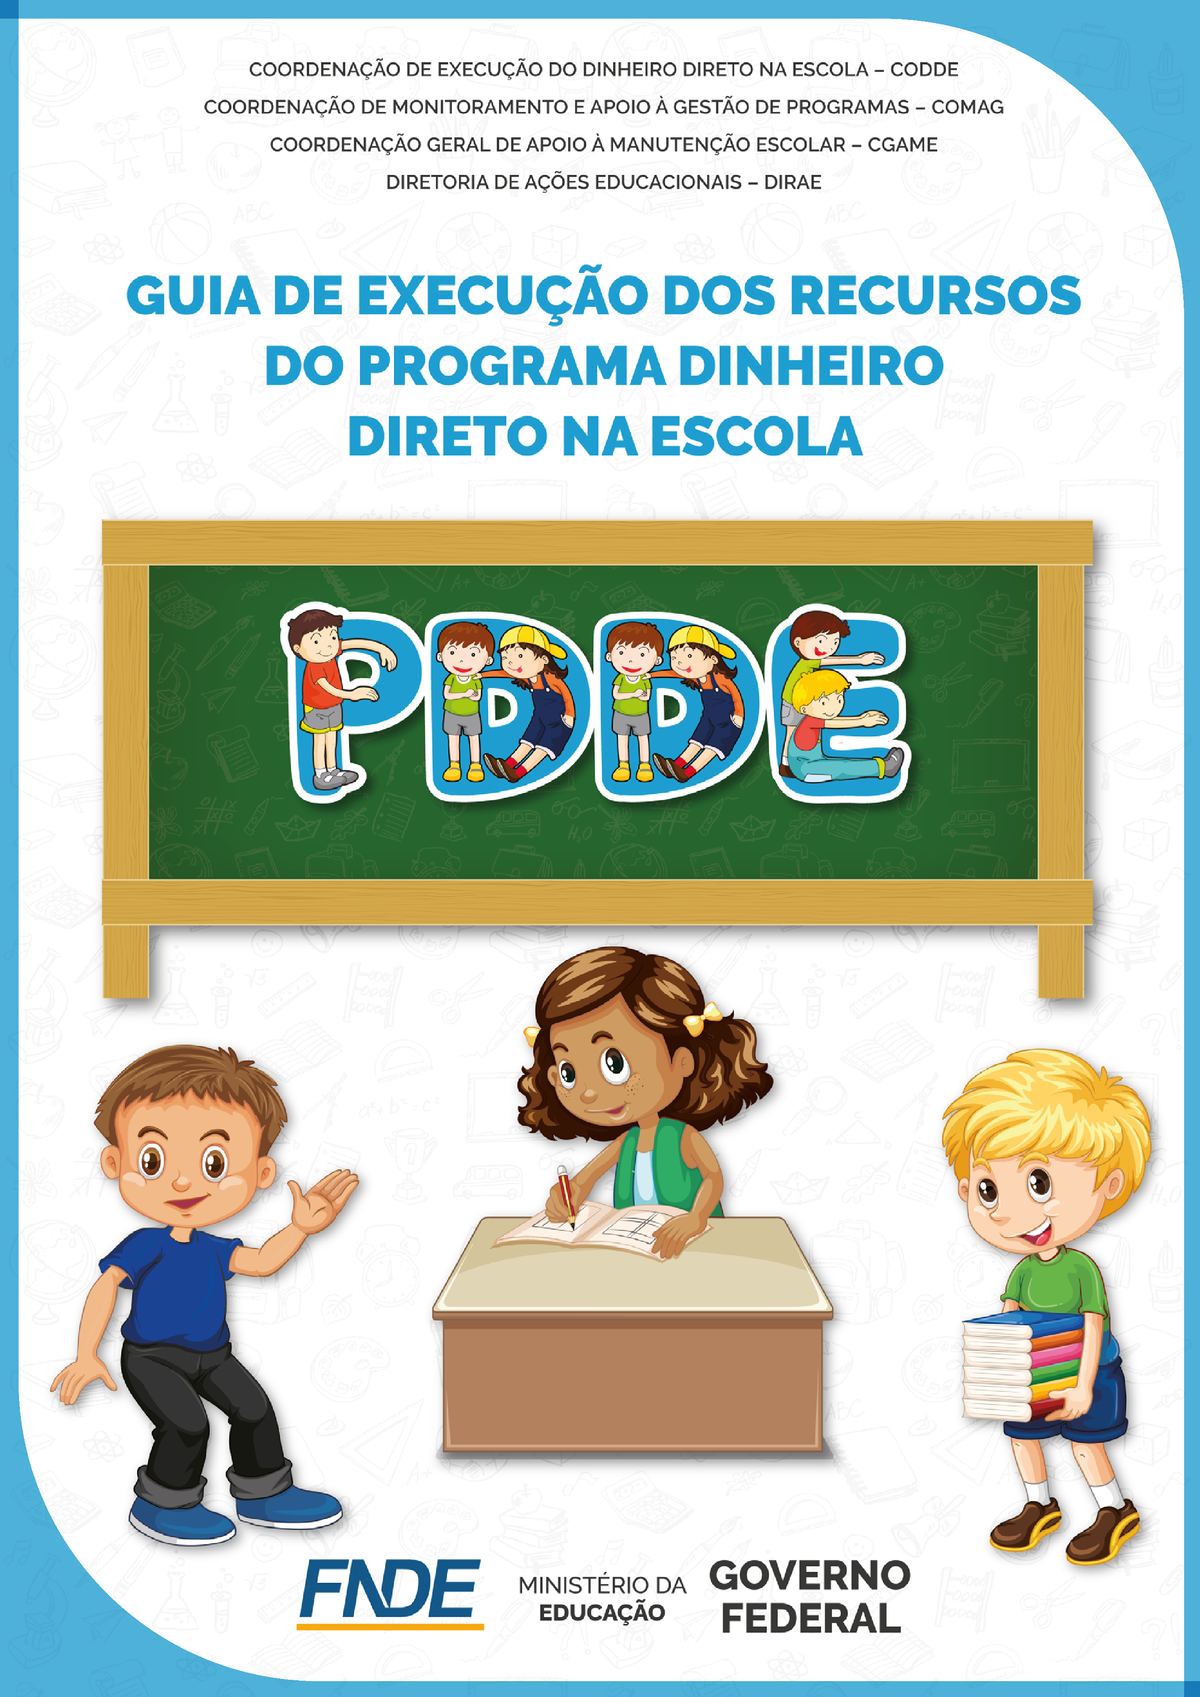 PDDE Game auxilia gestores educacionais na execução do Programa